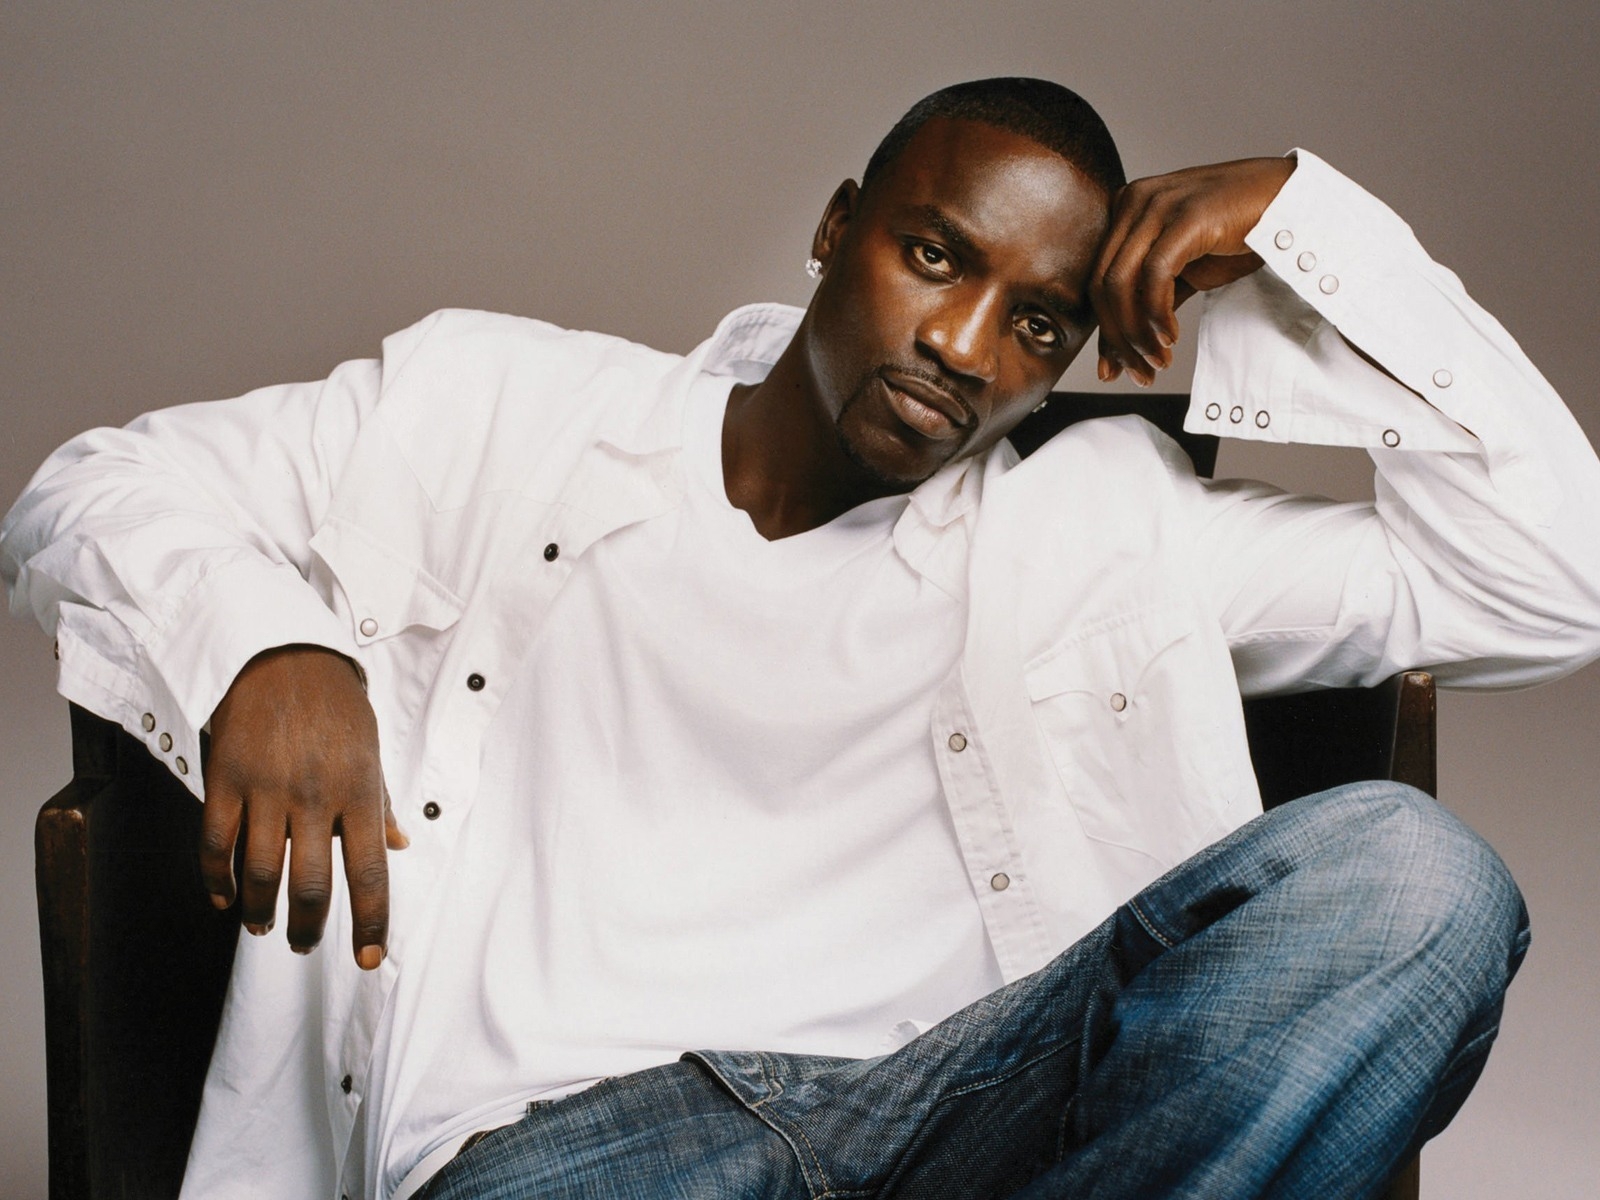 Akon for 1600 x 1200 resolution